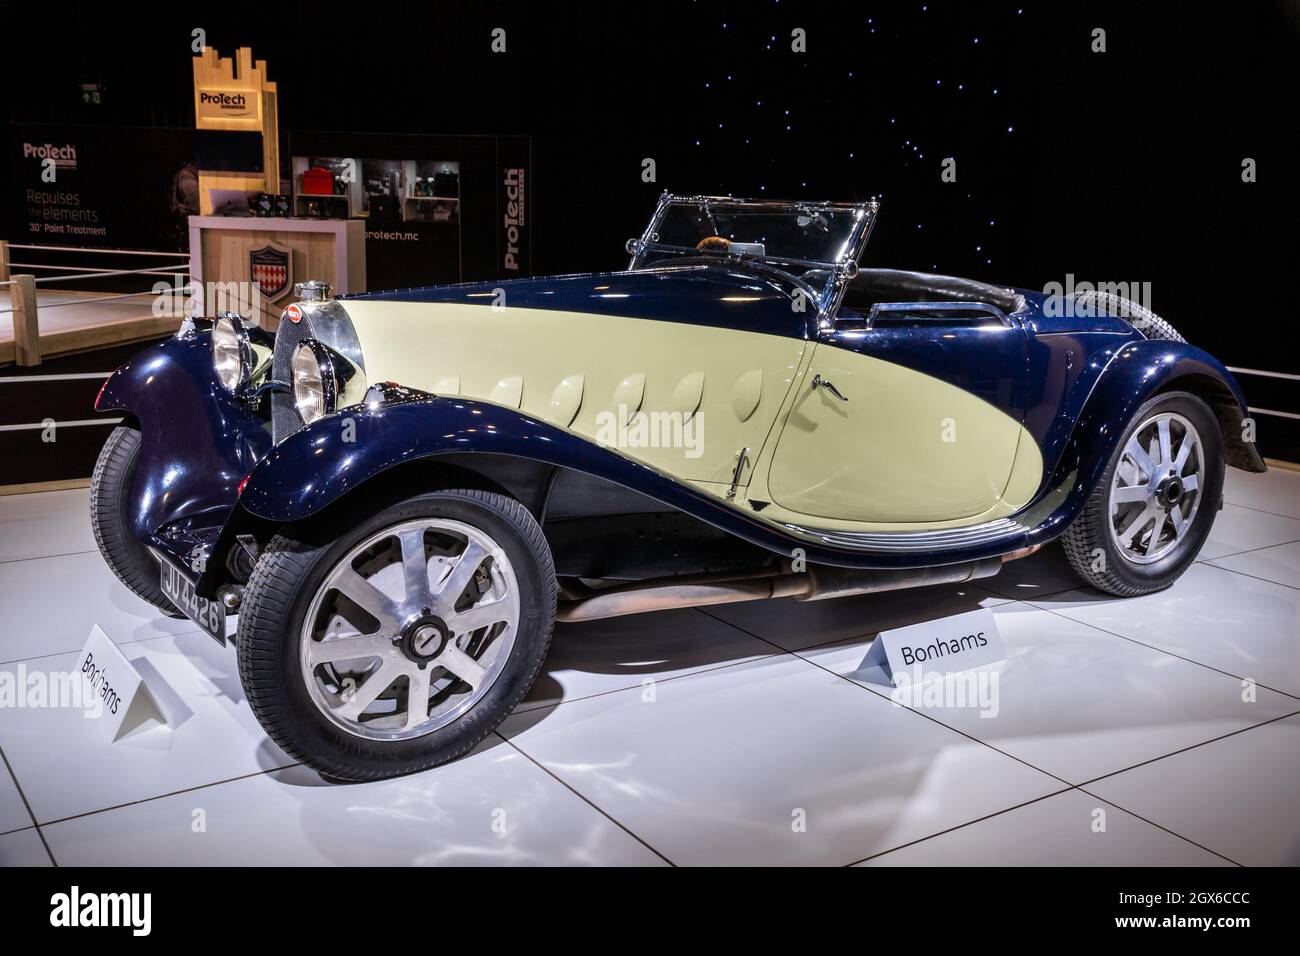 1932 Bugatti Type 55 Roadster in mostra al Motor Show Autosalon 2020. Bruxelles, Belgio - 9 gennaio 2020. Foto Stock